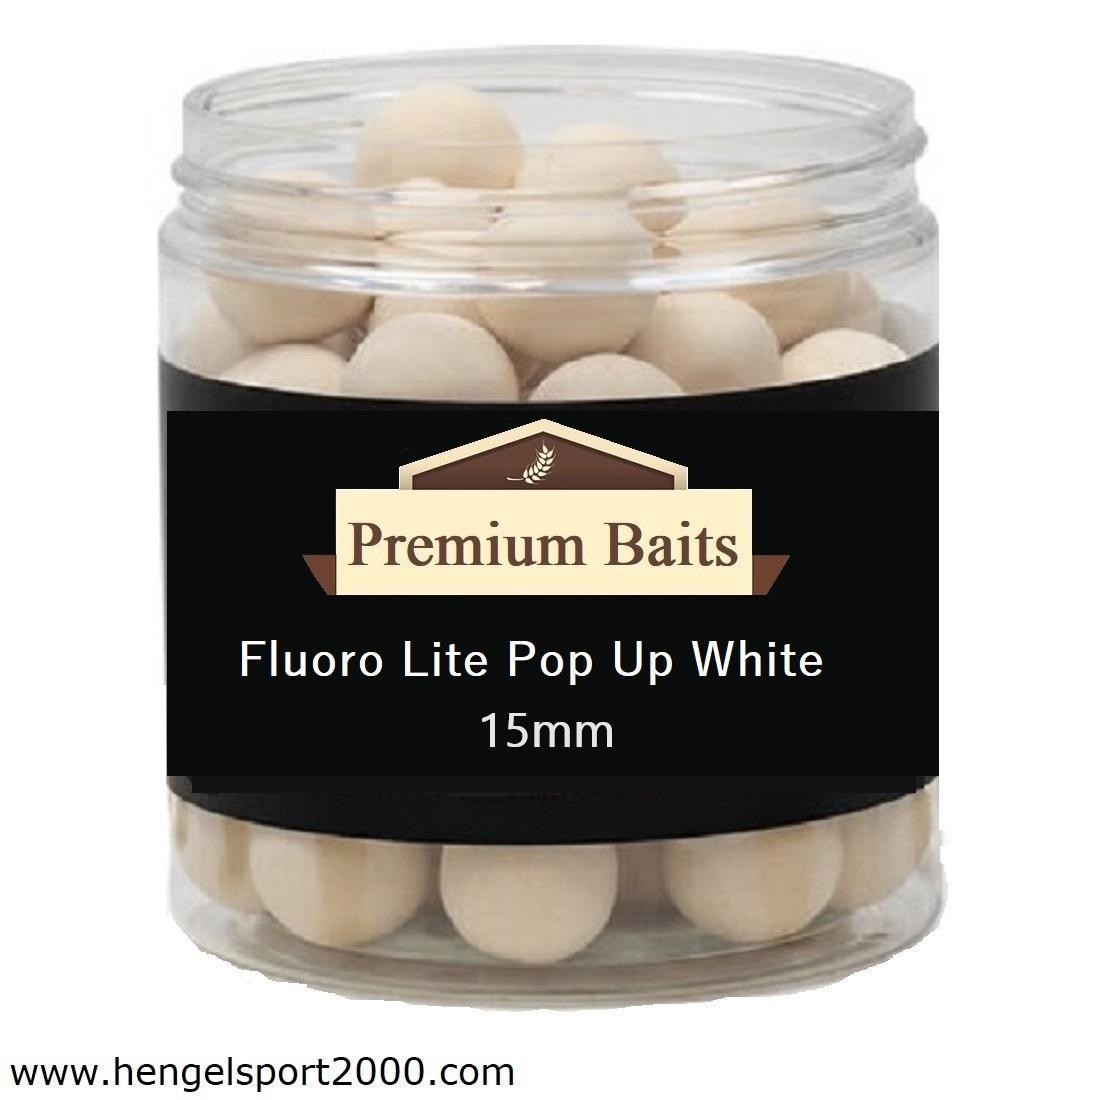 Premium Baits Fluoro White Pop Ups